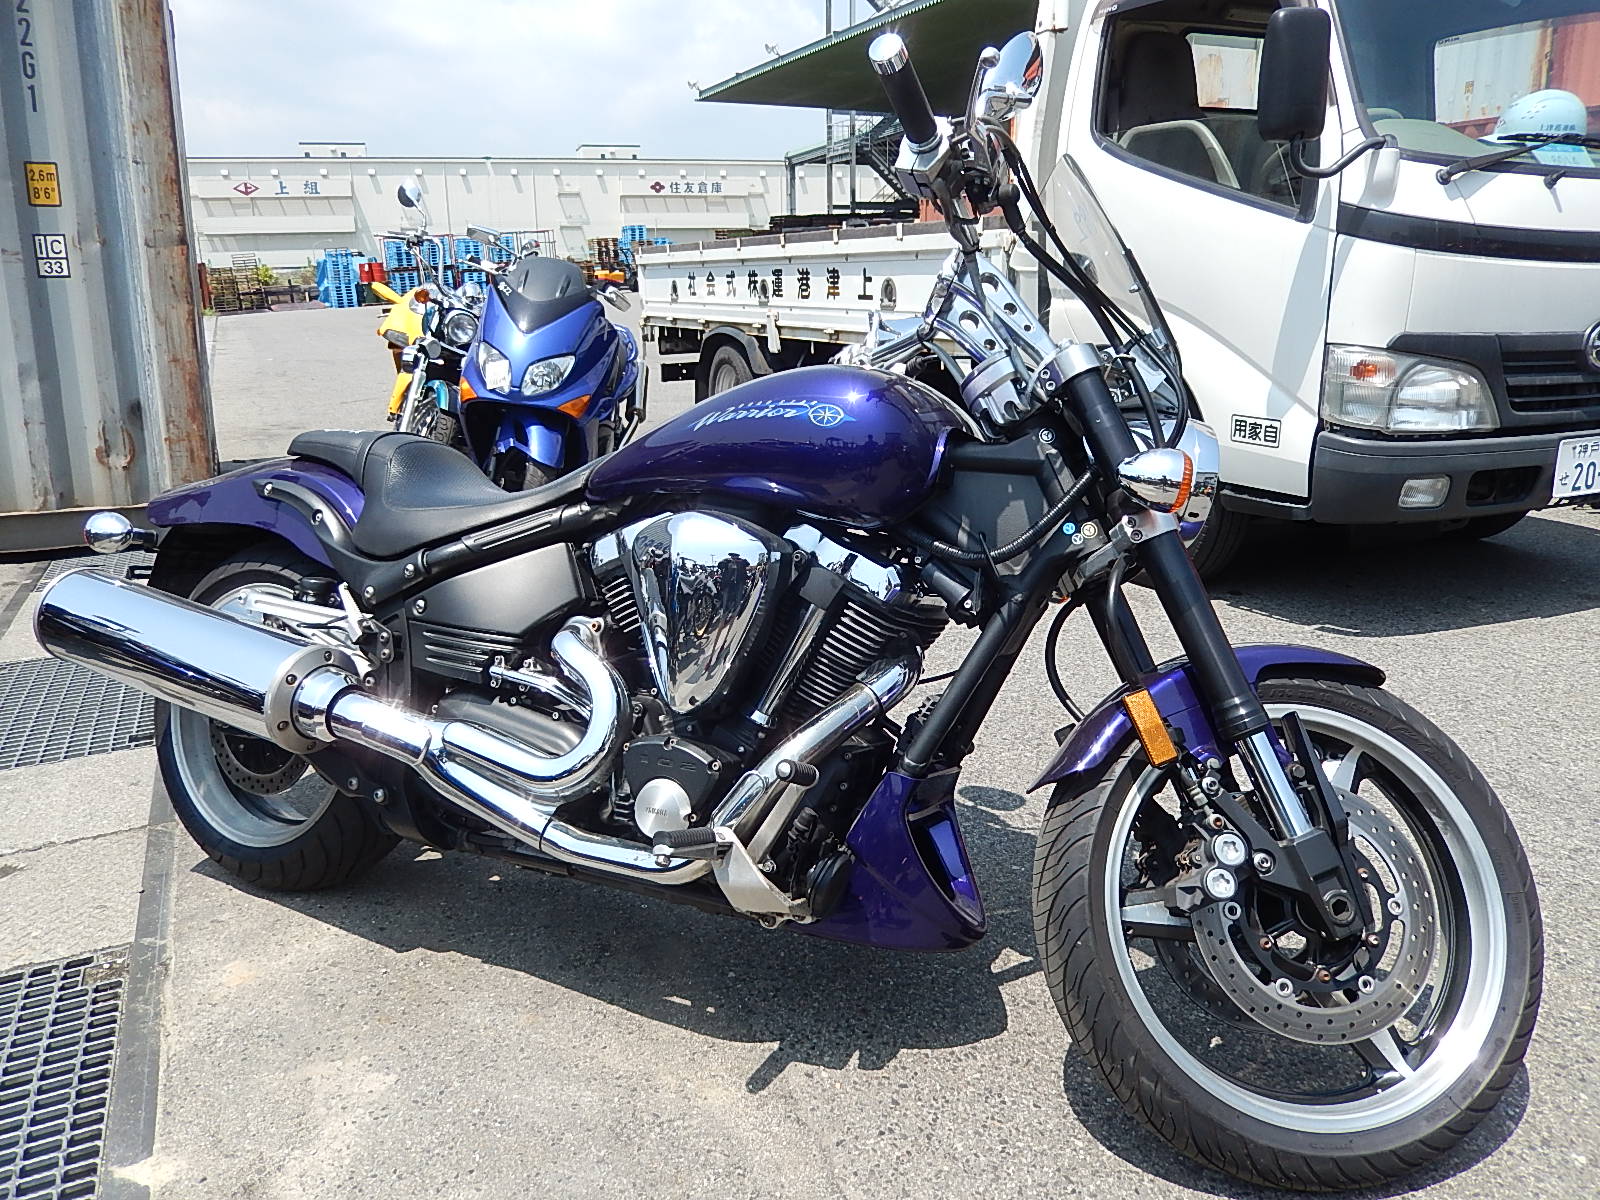 Yamaha xv1700 (road star, silverado, warrior): review, history, specs - bikeswiki.com, japanese motorcycle encyclopedia